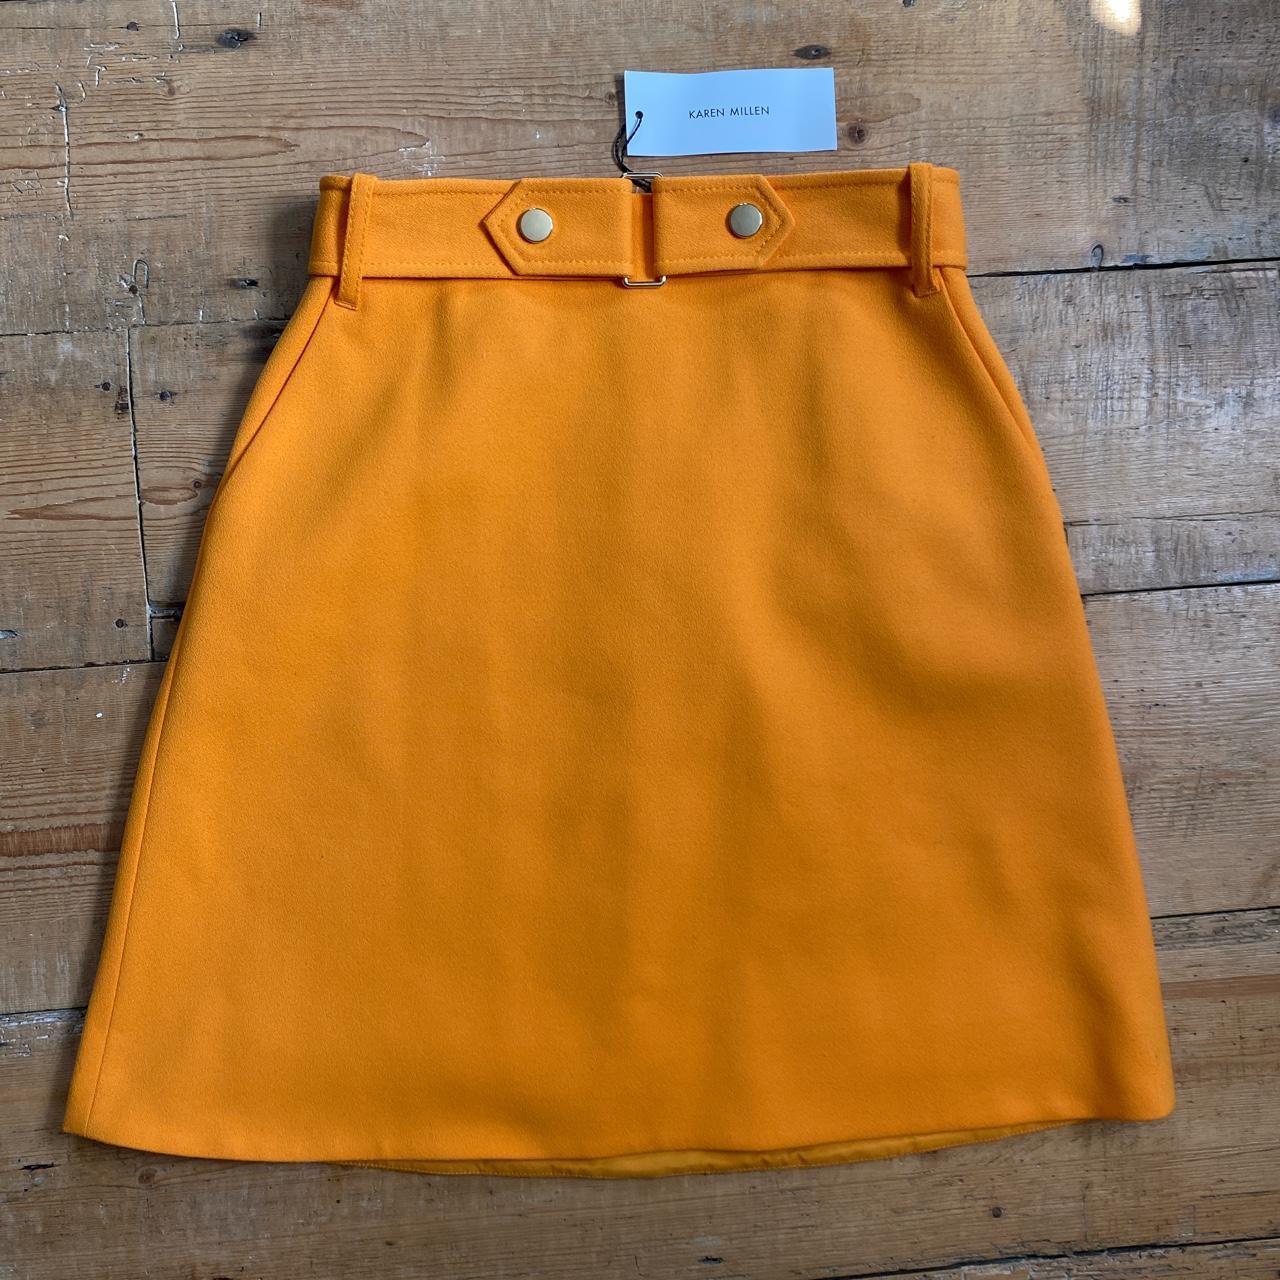 NEW Karen Millen a line skirt Size 8 Thick bold... - Depop